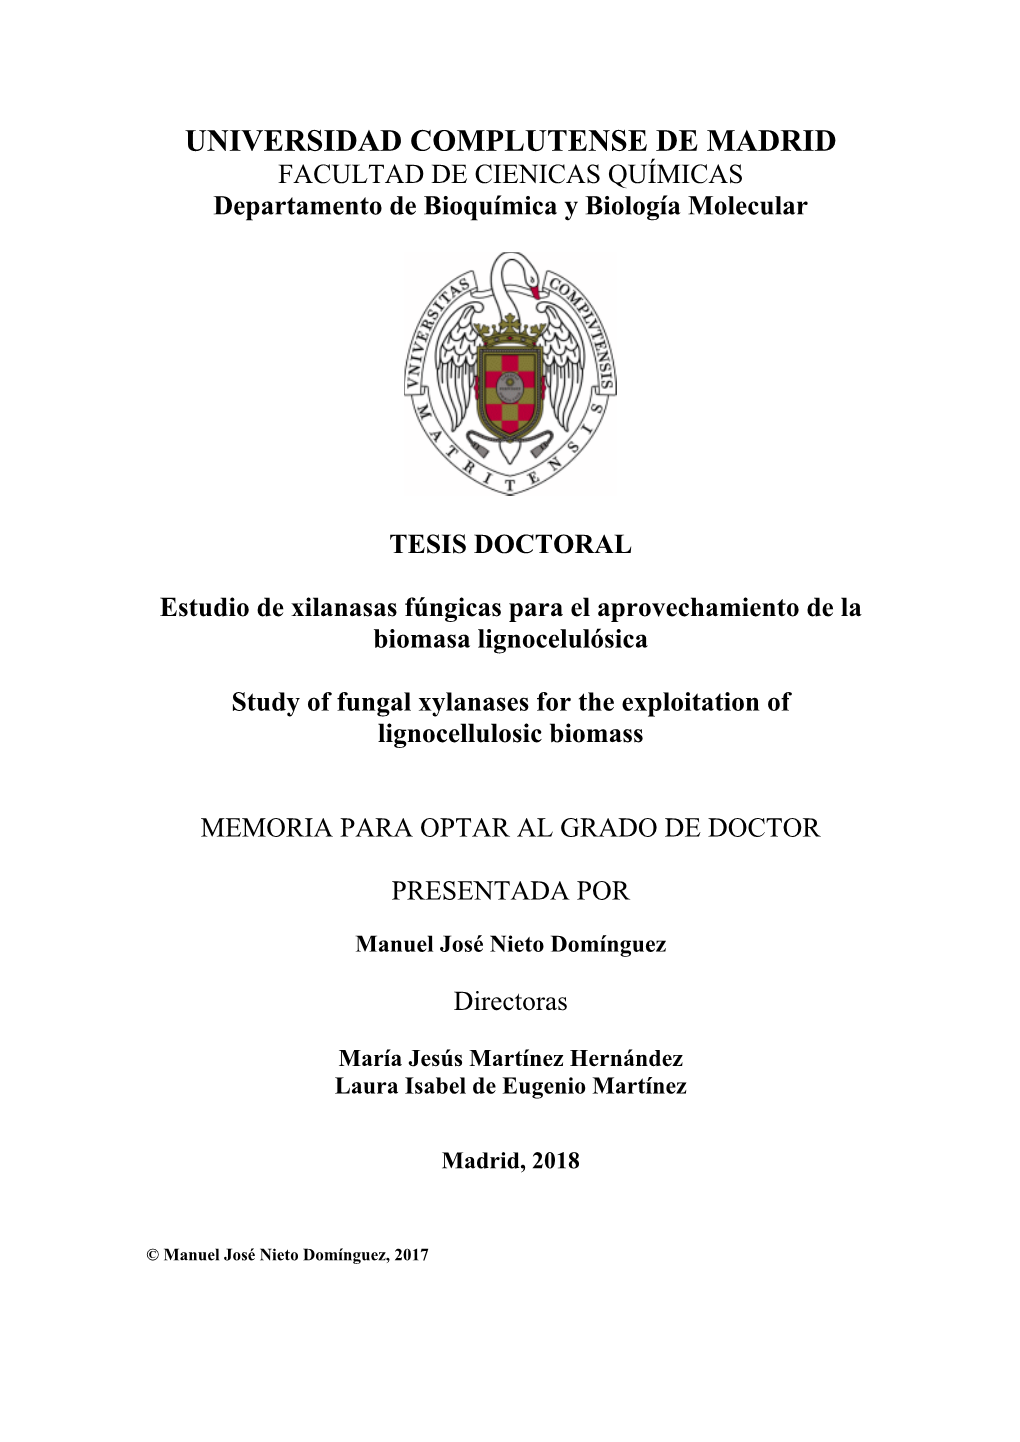 UNIVERSIDAD COMPLUTENSE DE MADRID FACULTAD DE CIENICAS QUÍMICAS Departamento De Bioquímica Y Biología Molecular